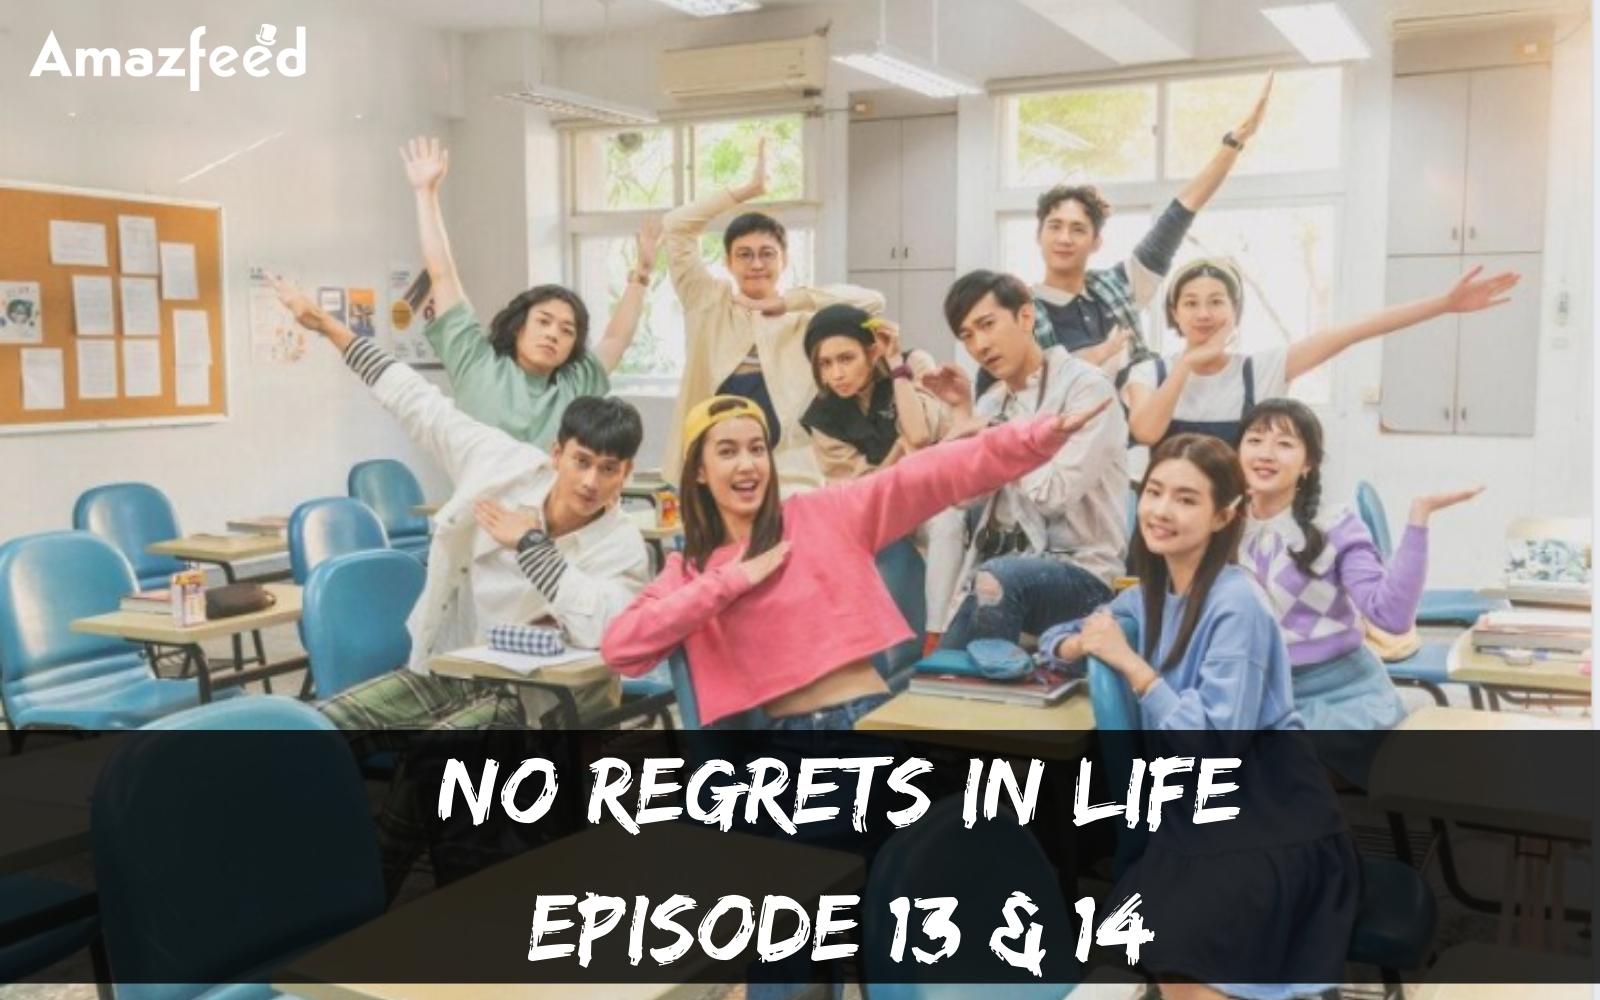 No Regrets In Life Episode 13 & 14 : Countdown, Release Date, Spoilers, Recap & Trailer